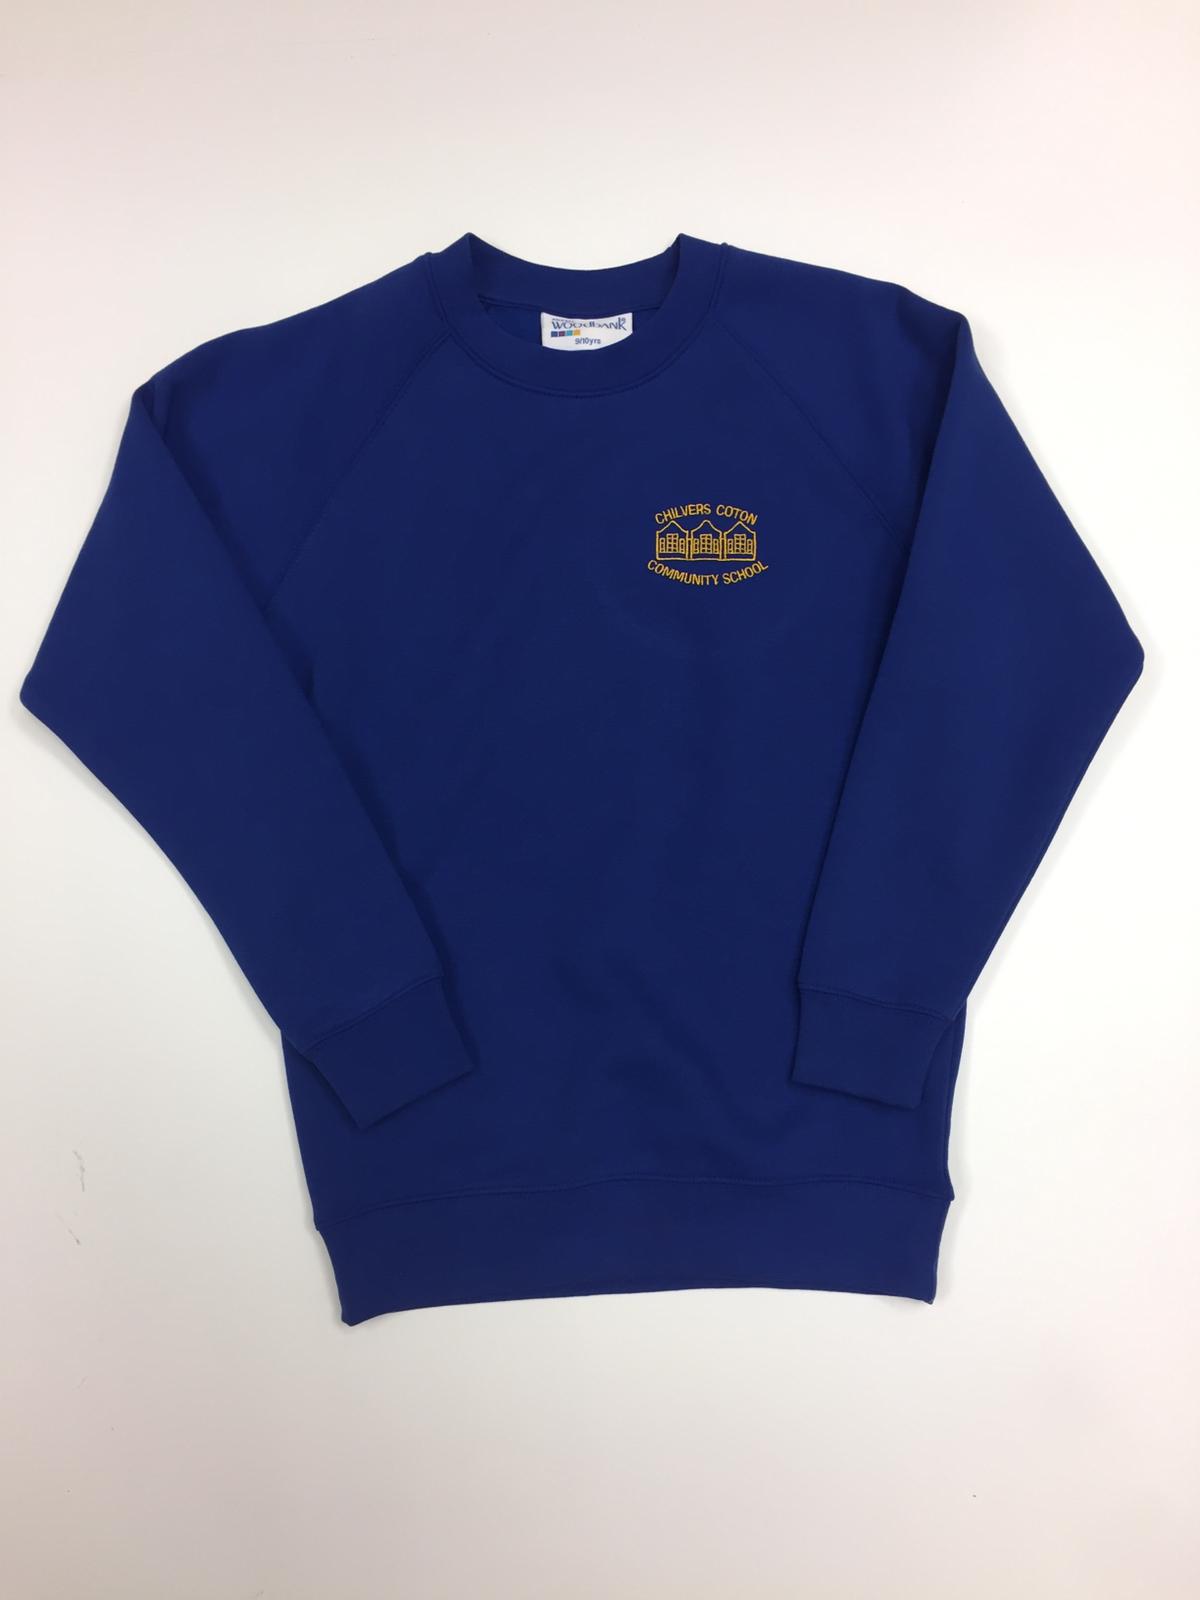 Chilvers Coton Royal Crew Sweatshirt w/Logo - Schoolwear Solutions